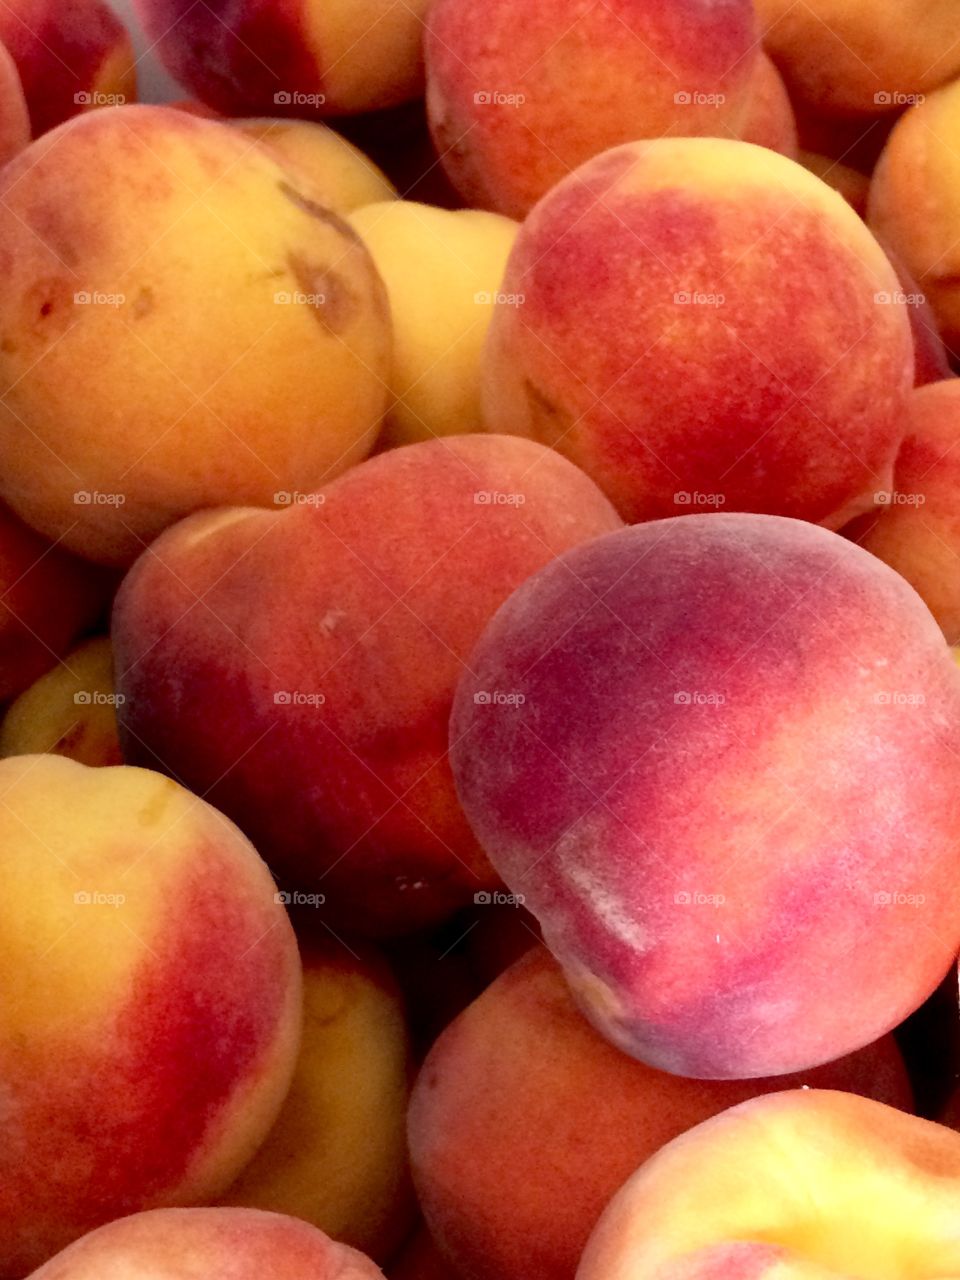 Peach season!